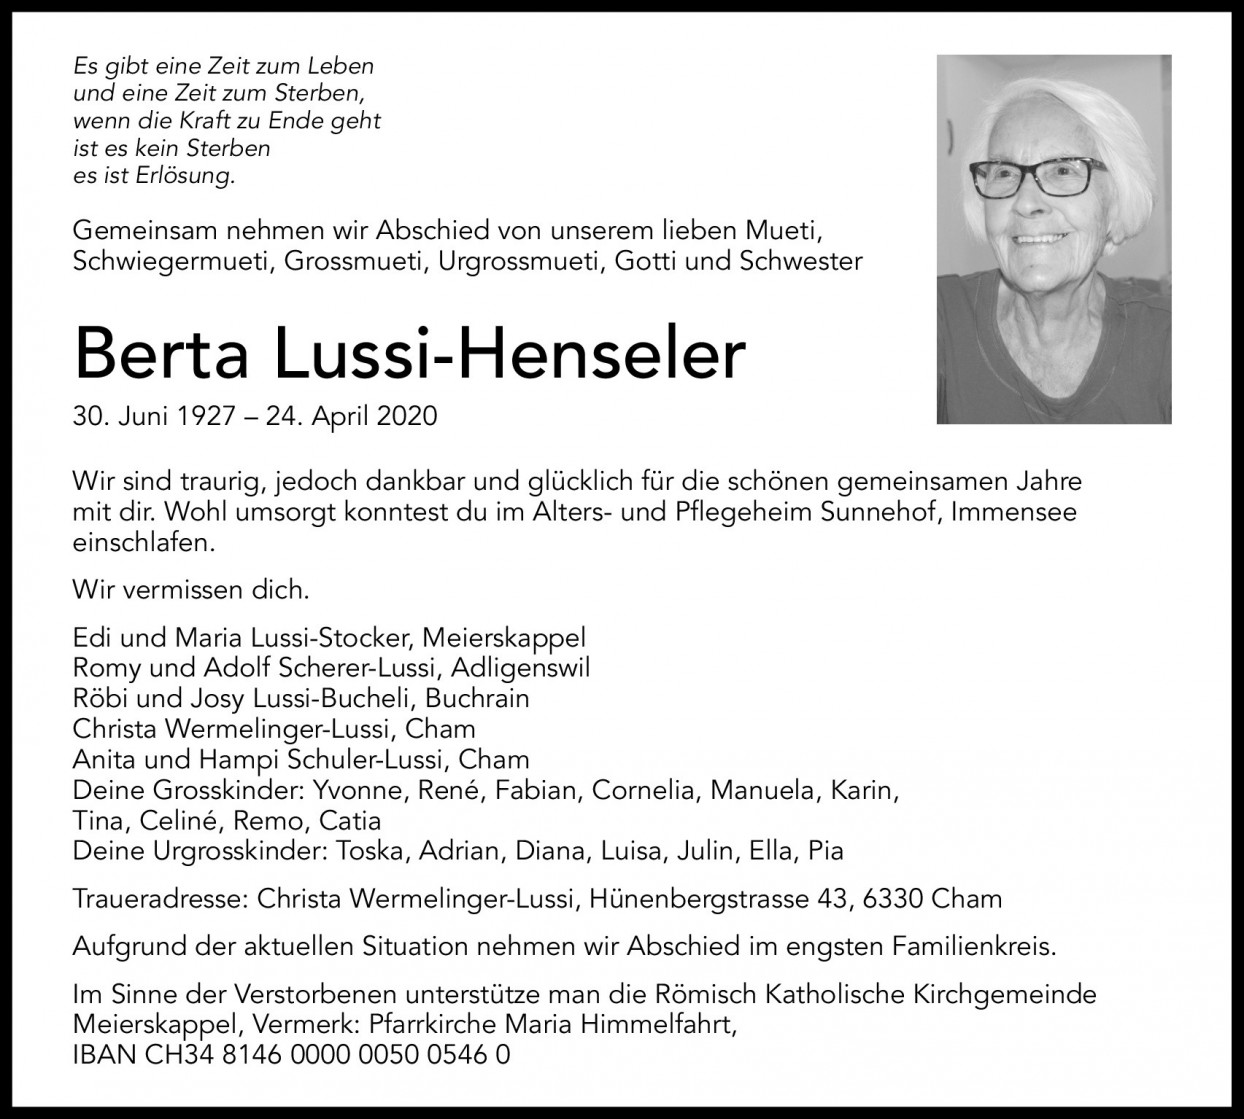 Berta Lussi-Henseler